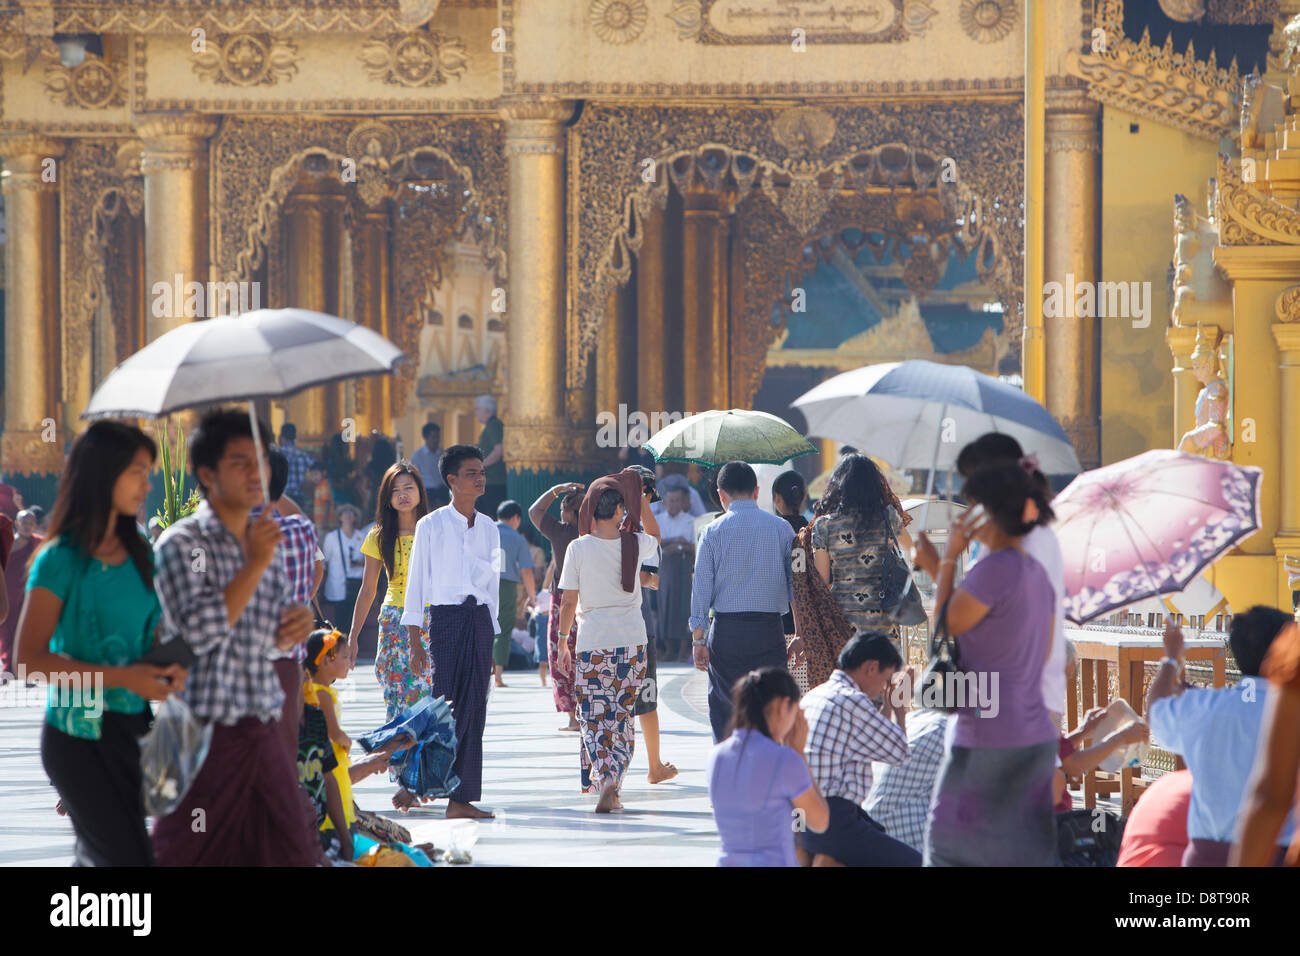 Dimanche la foule marcher pieds nus sur le sol en marbre, entre les nombreux sanctuaires du Temple Schwedagon à Rangoon,(Yangon). Banque D'Images